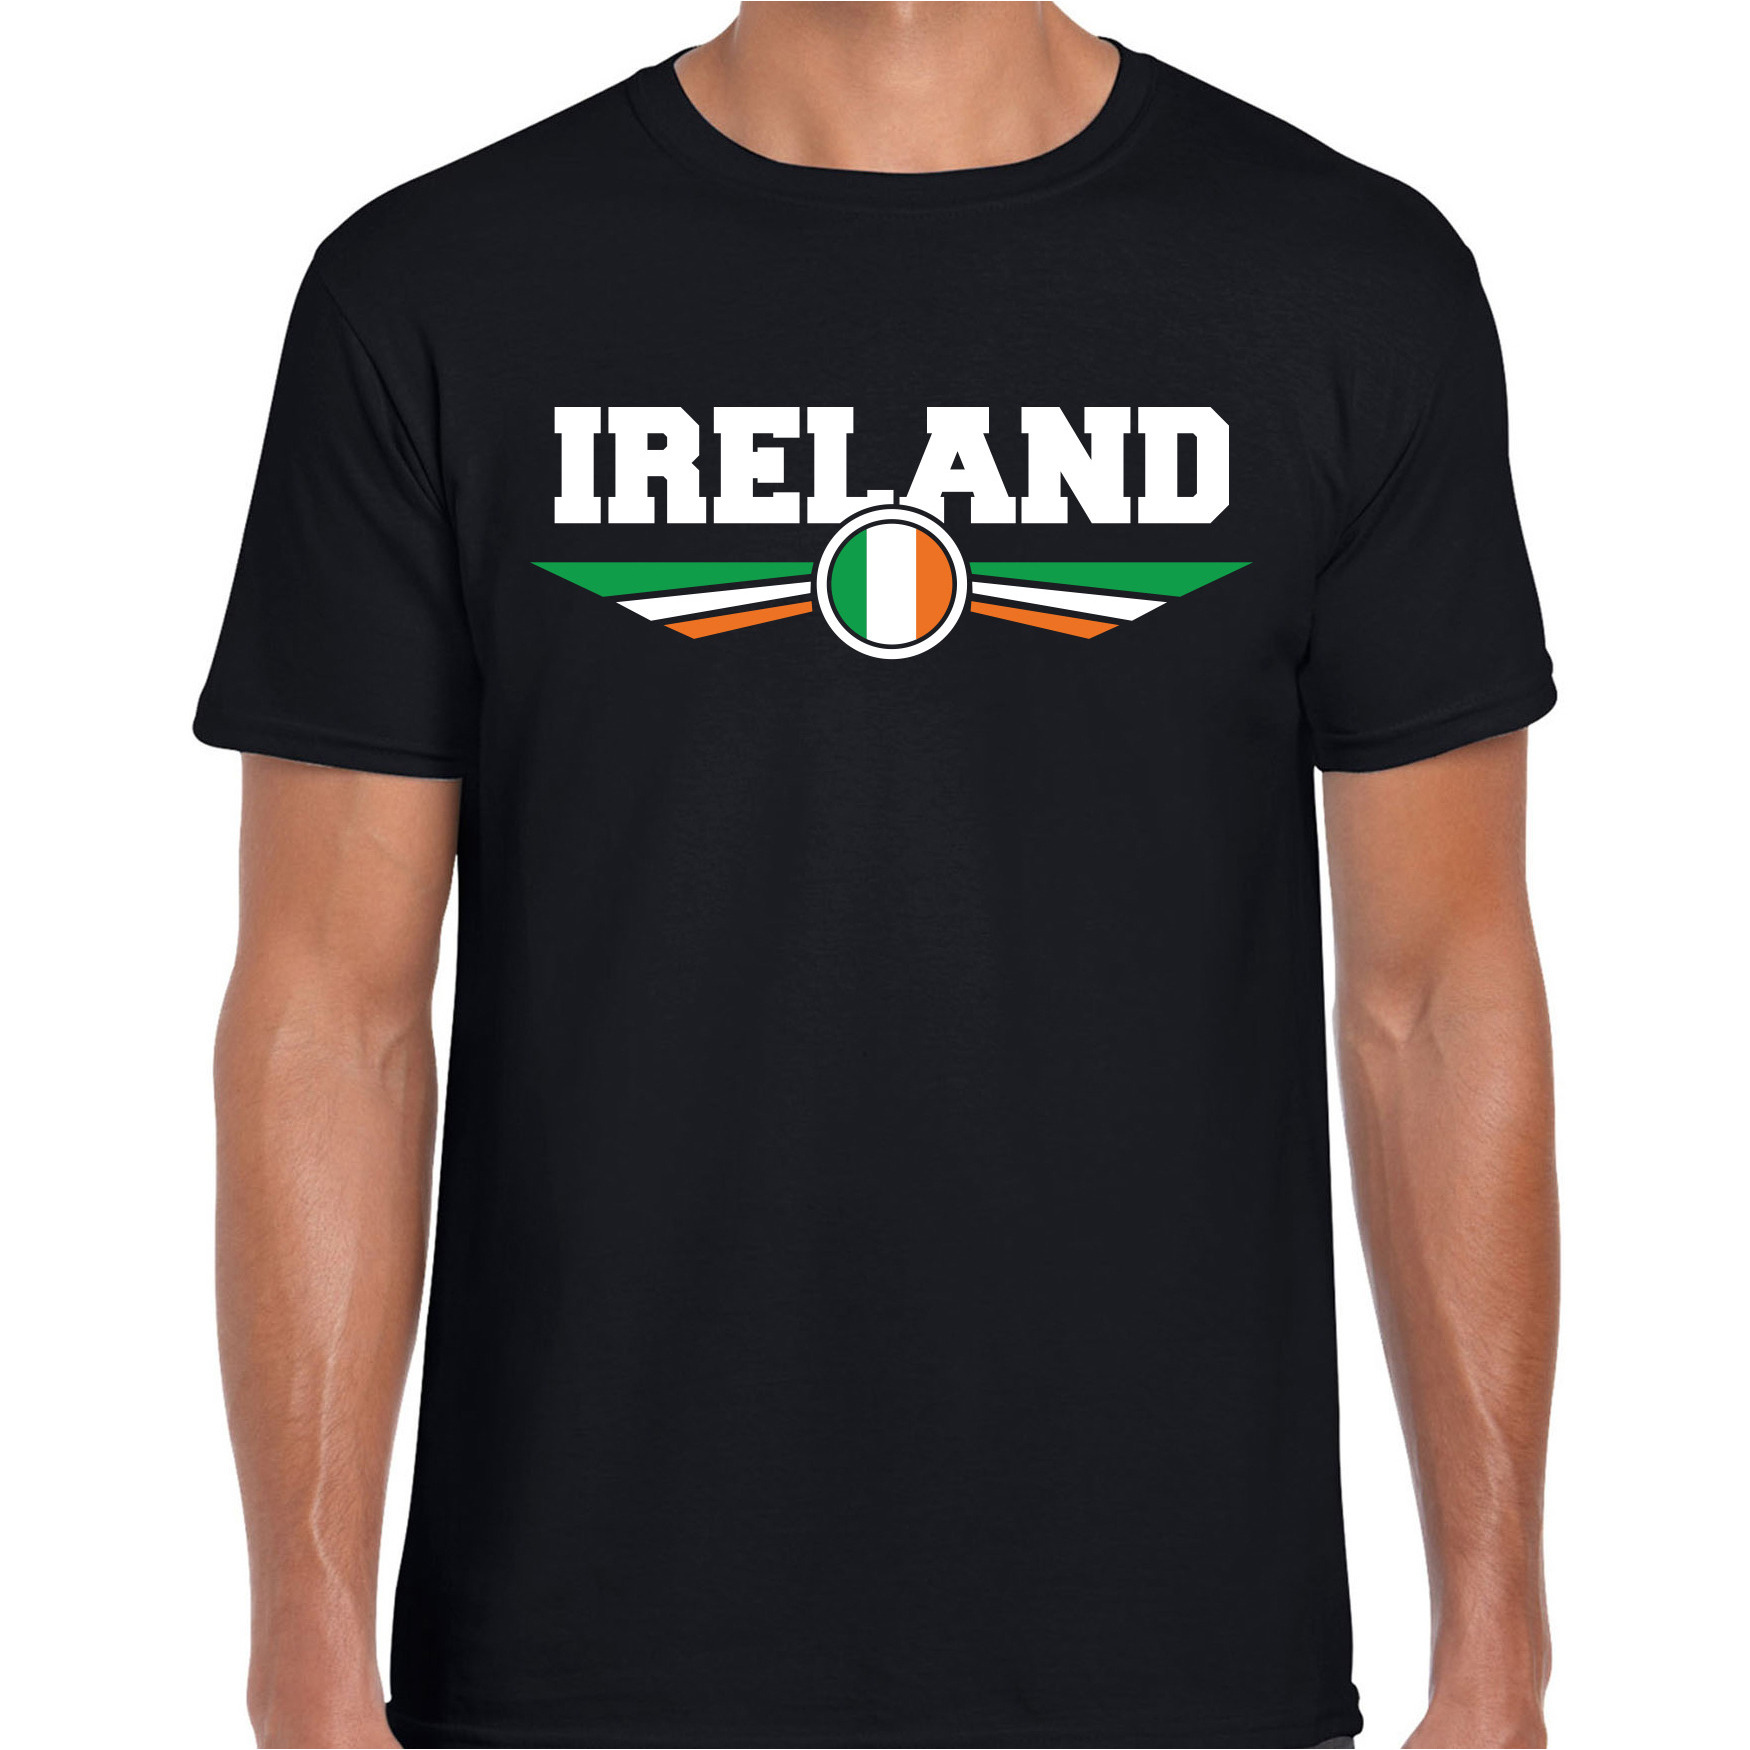 Ierland-Ireland landen t-shirt zwart heren